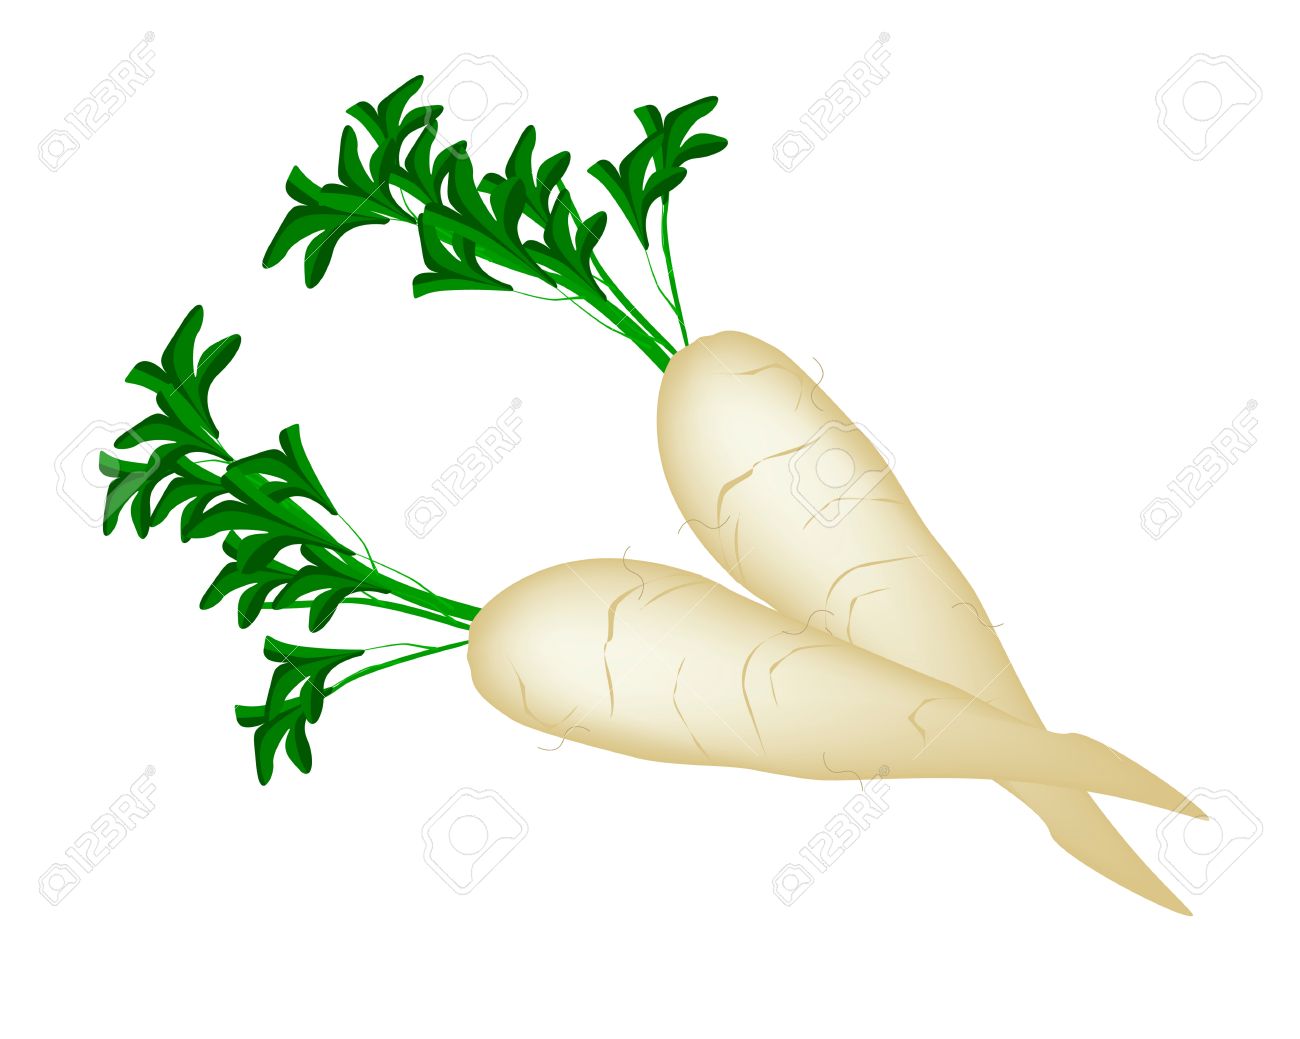 Vegetable, Vector Illustration Of Fresh White Radishes Or Daikon.